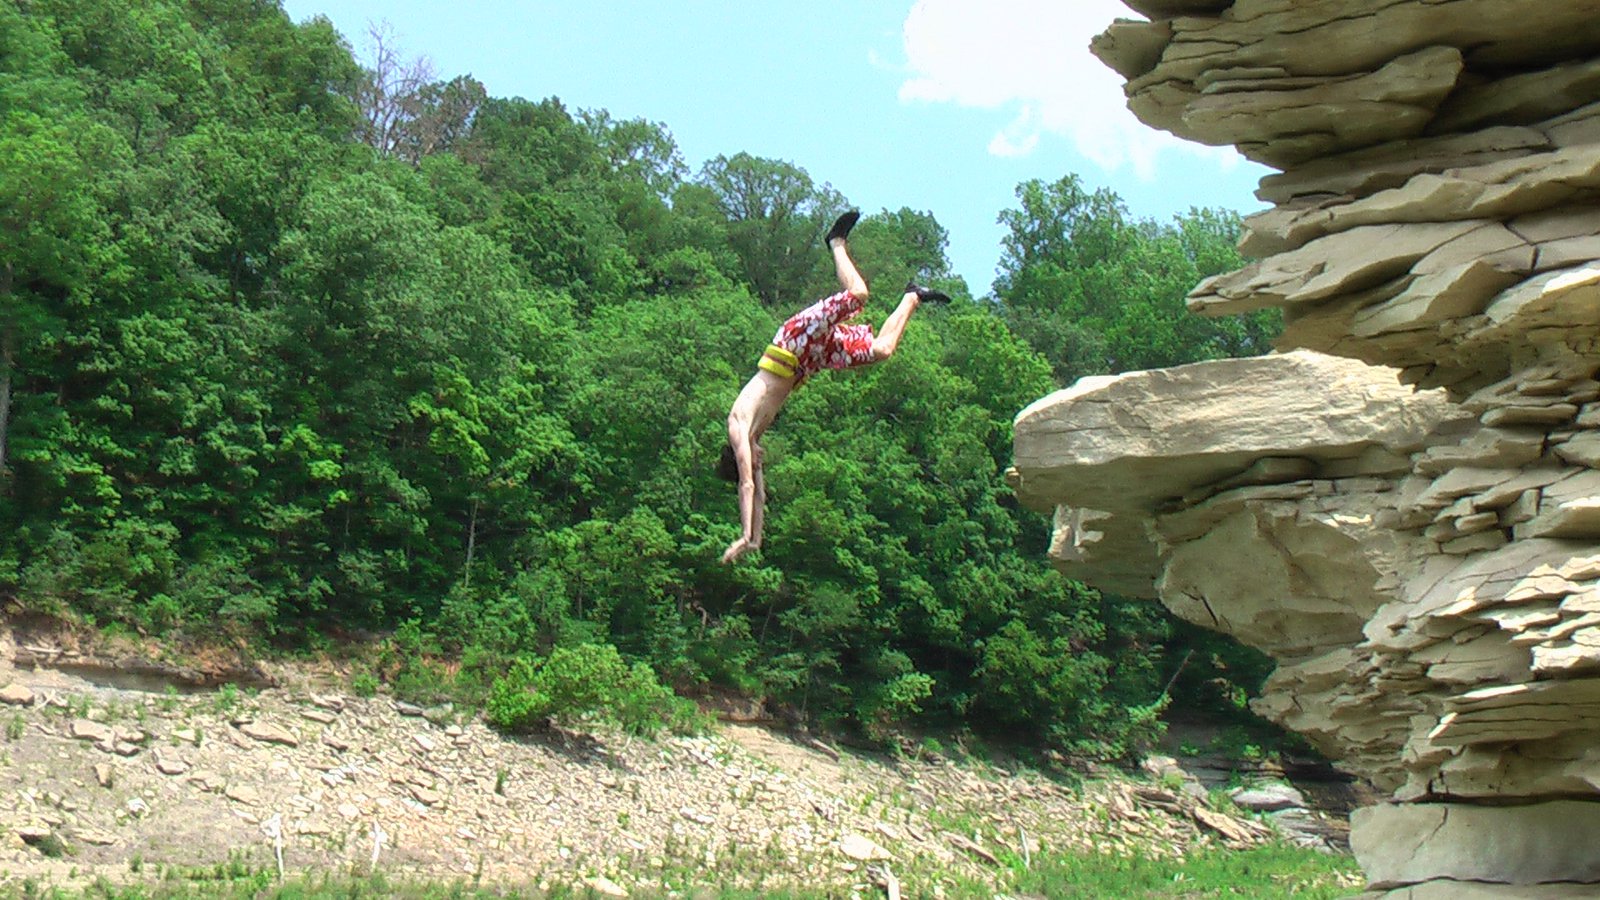 Superman Frontflip off a Cliff